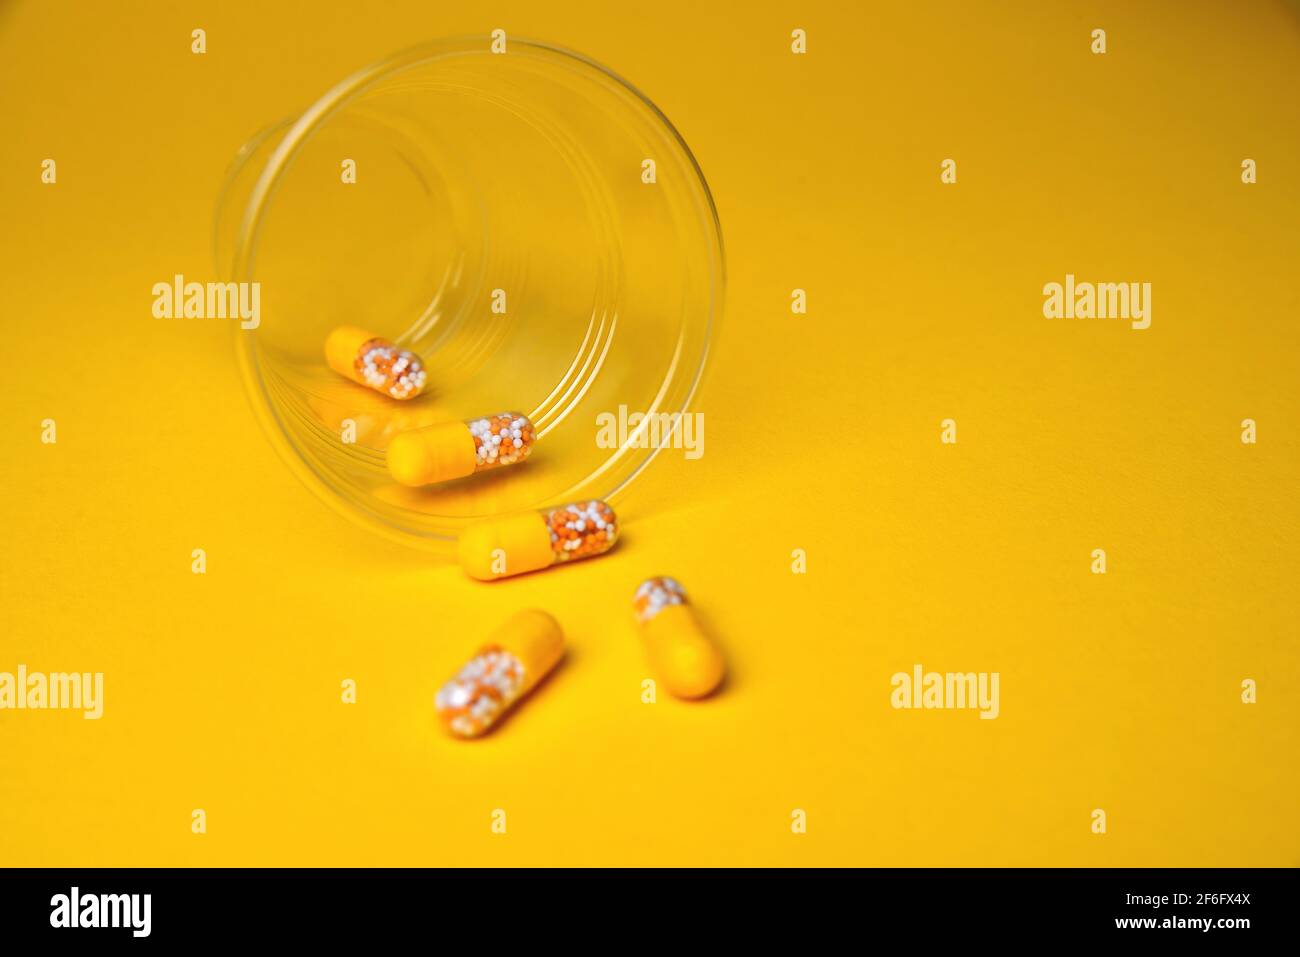 Kapseln in einem Glasbecher. Medizinische Tabletten, Vitamine in einem Granulat, in gelben Kapseln auf einem gelben Hintergrund. Blur als kreative Idee des Autors, Stockfoto